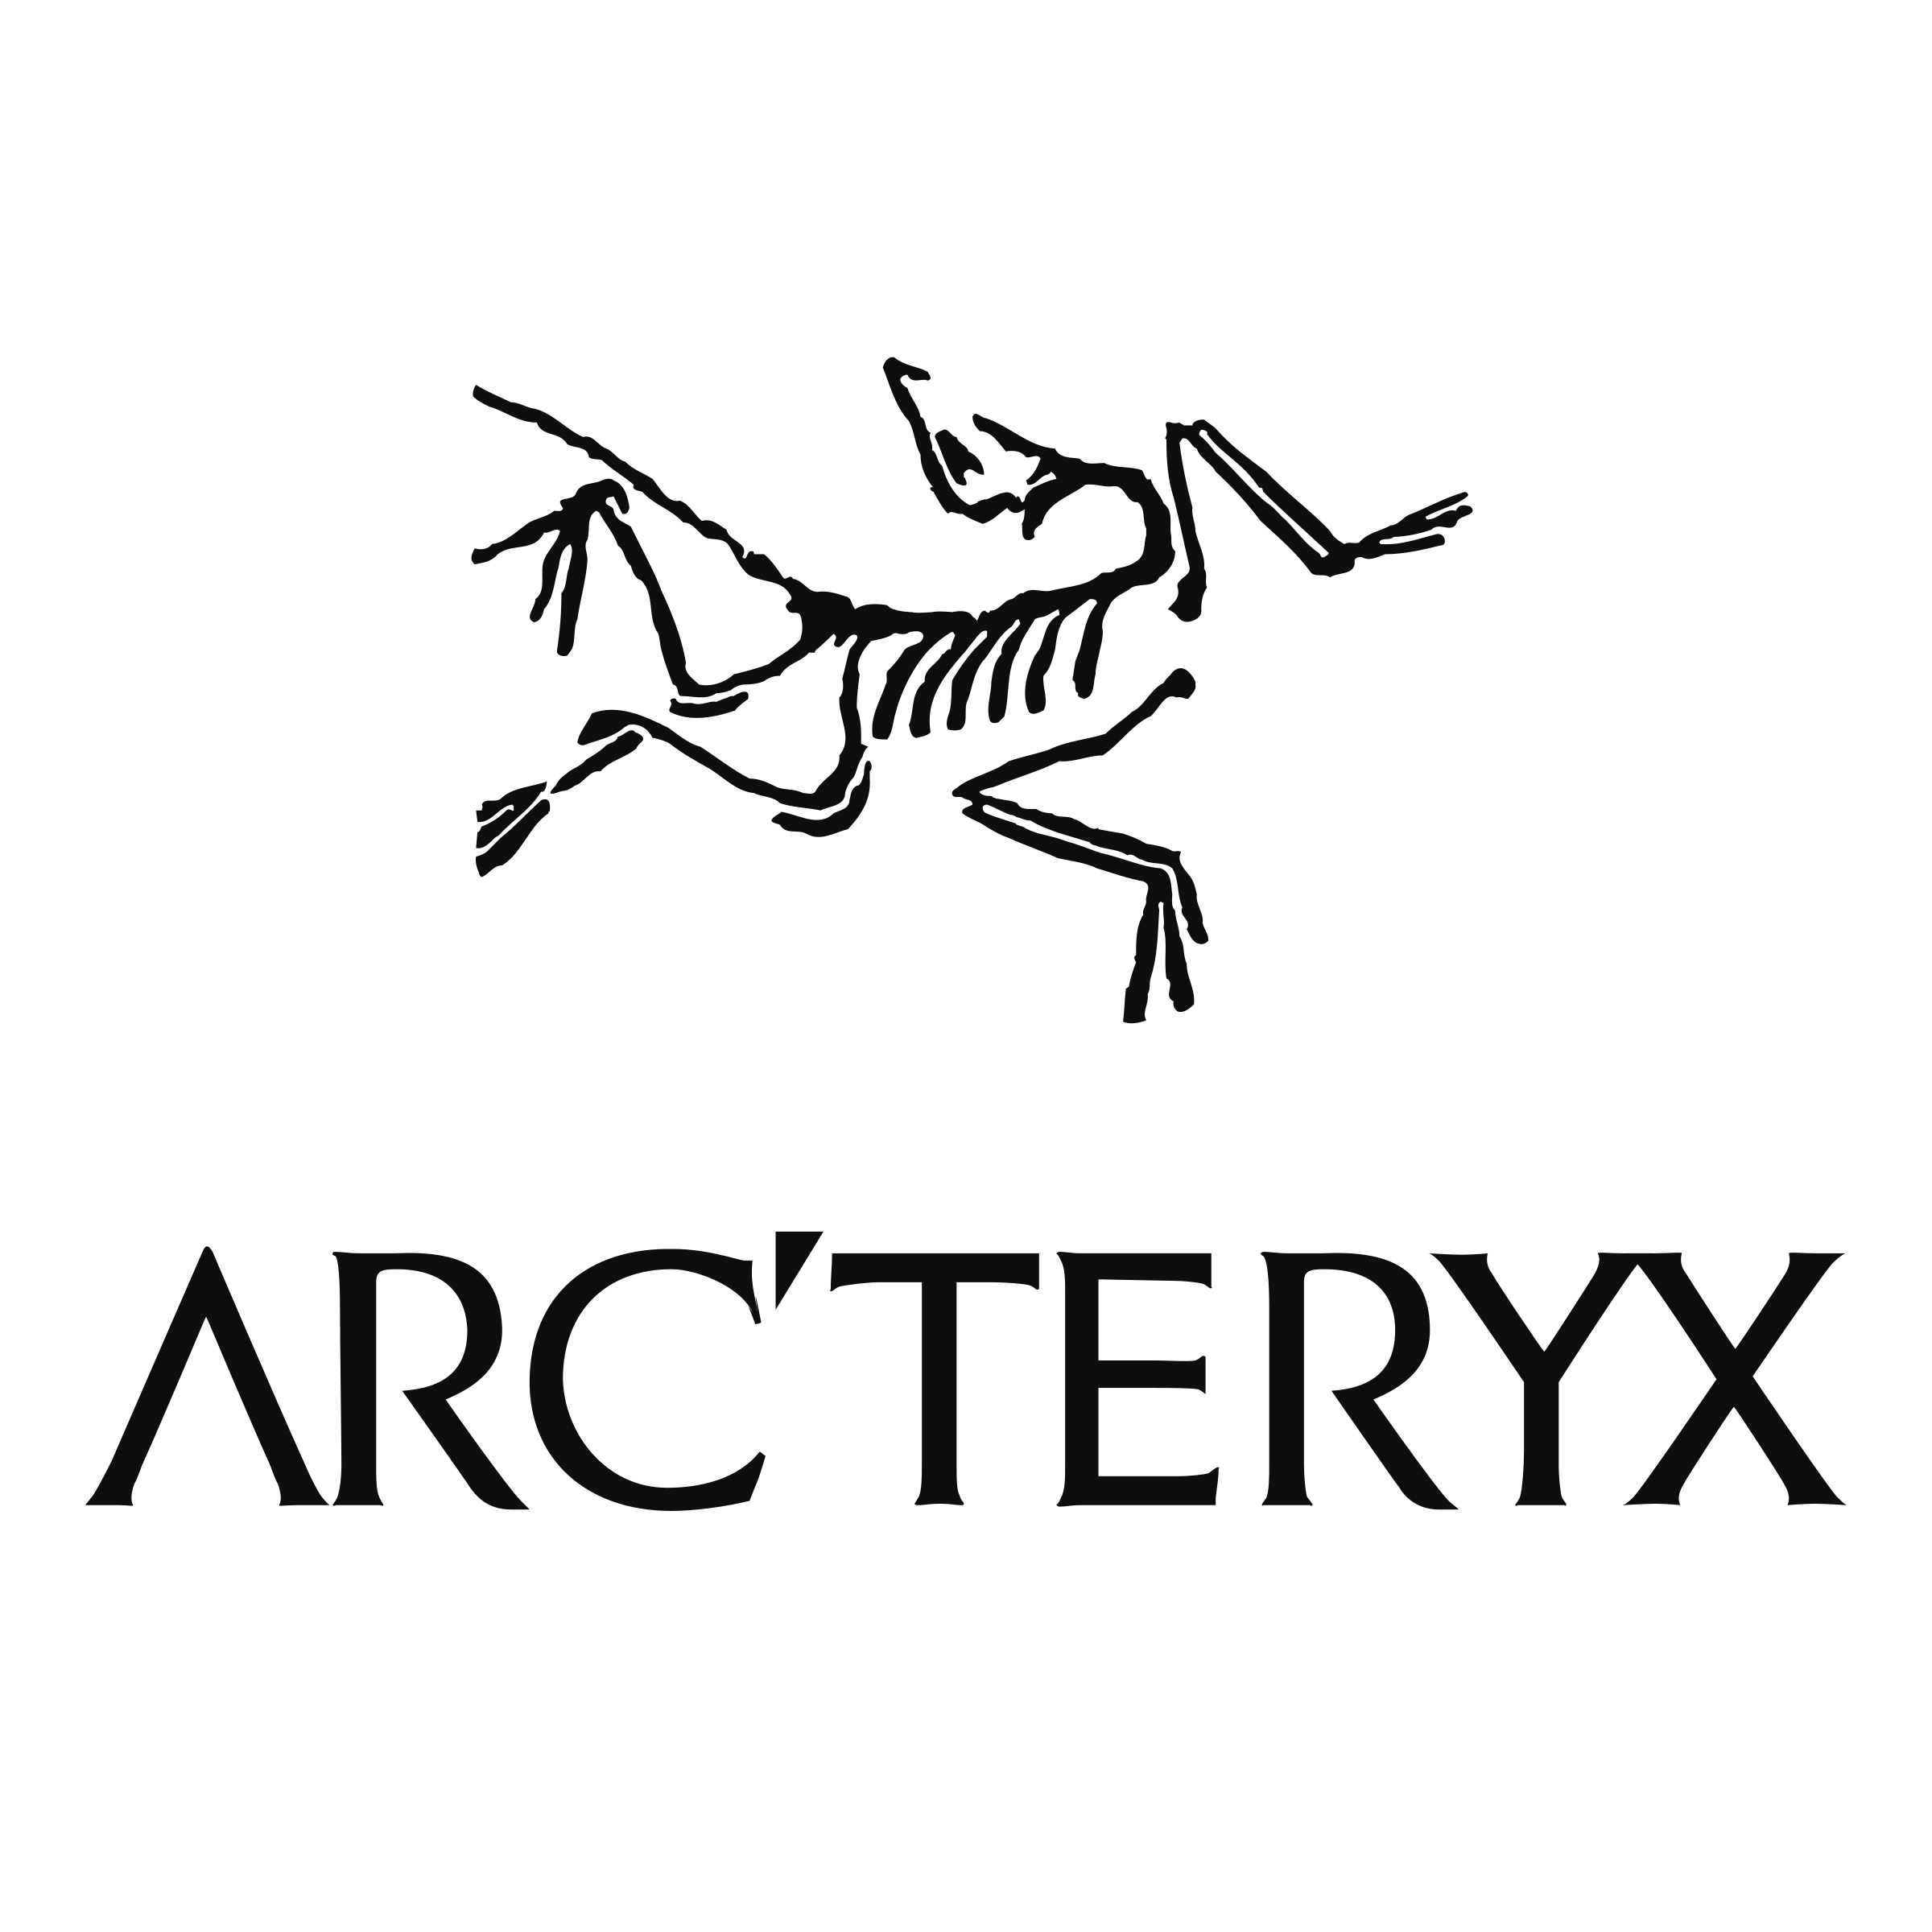 Arcteryx